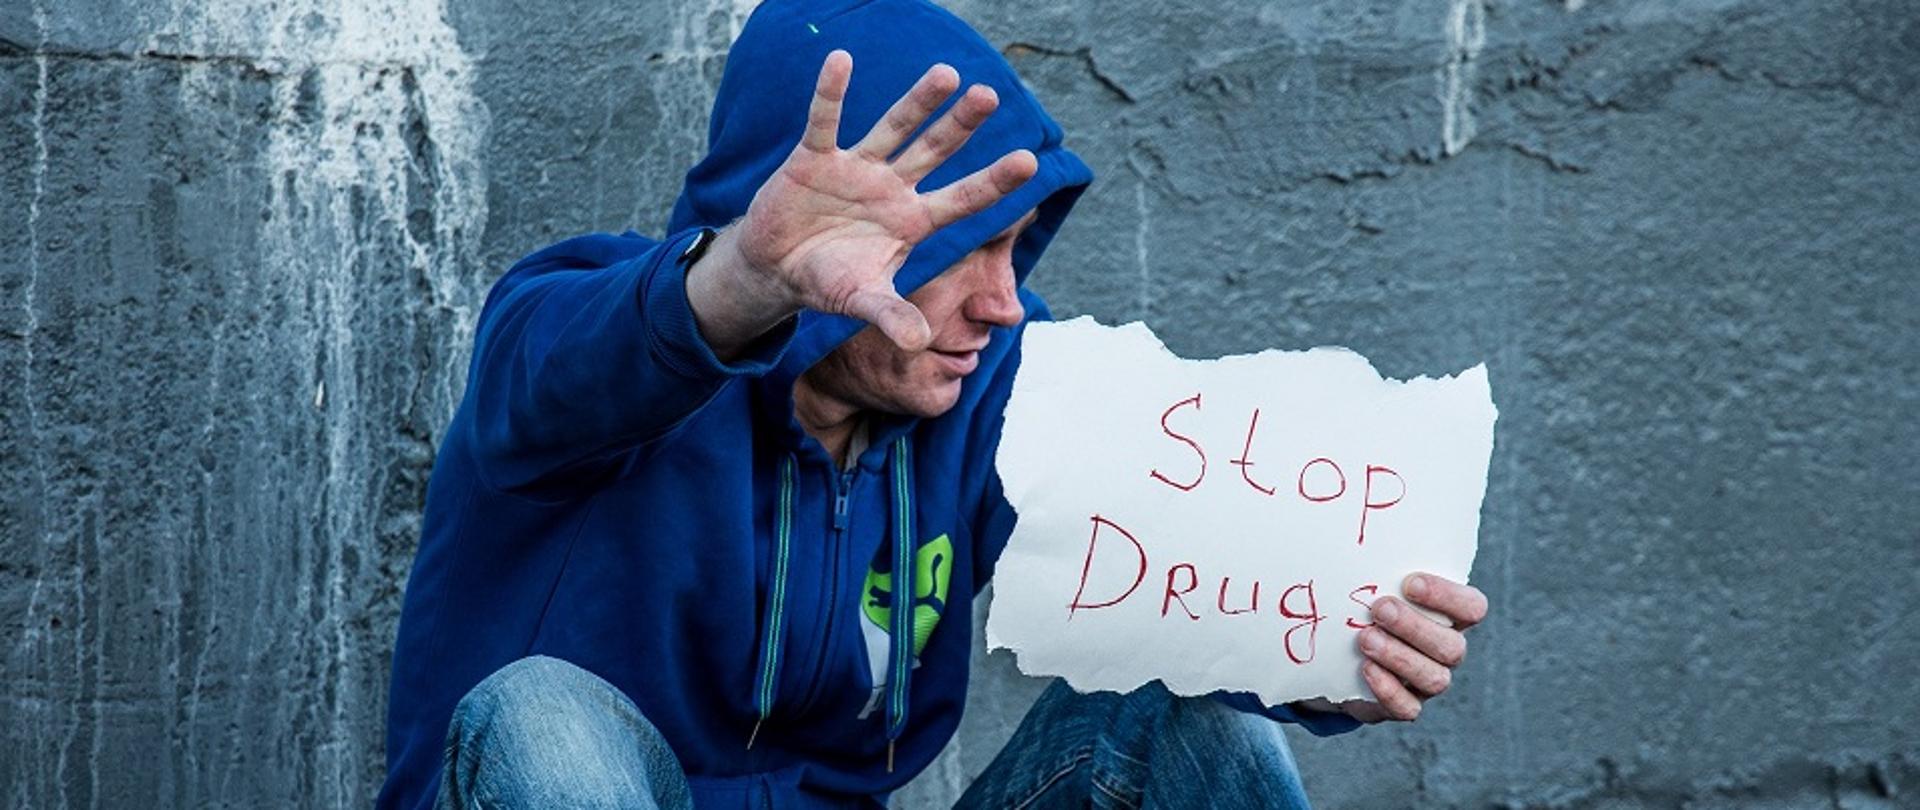 Siedzący na ziemi mężczyzna pod ścianą, w niebieskiej bluzie z kapturem na głowie. Prawą rękę ma wyciągniętą do przodu i dłonią pokazuje symboliczny znak "Stop", a w lewej ręce trzyma kartkę z napisem "Stop drugs"